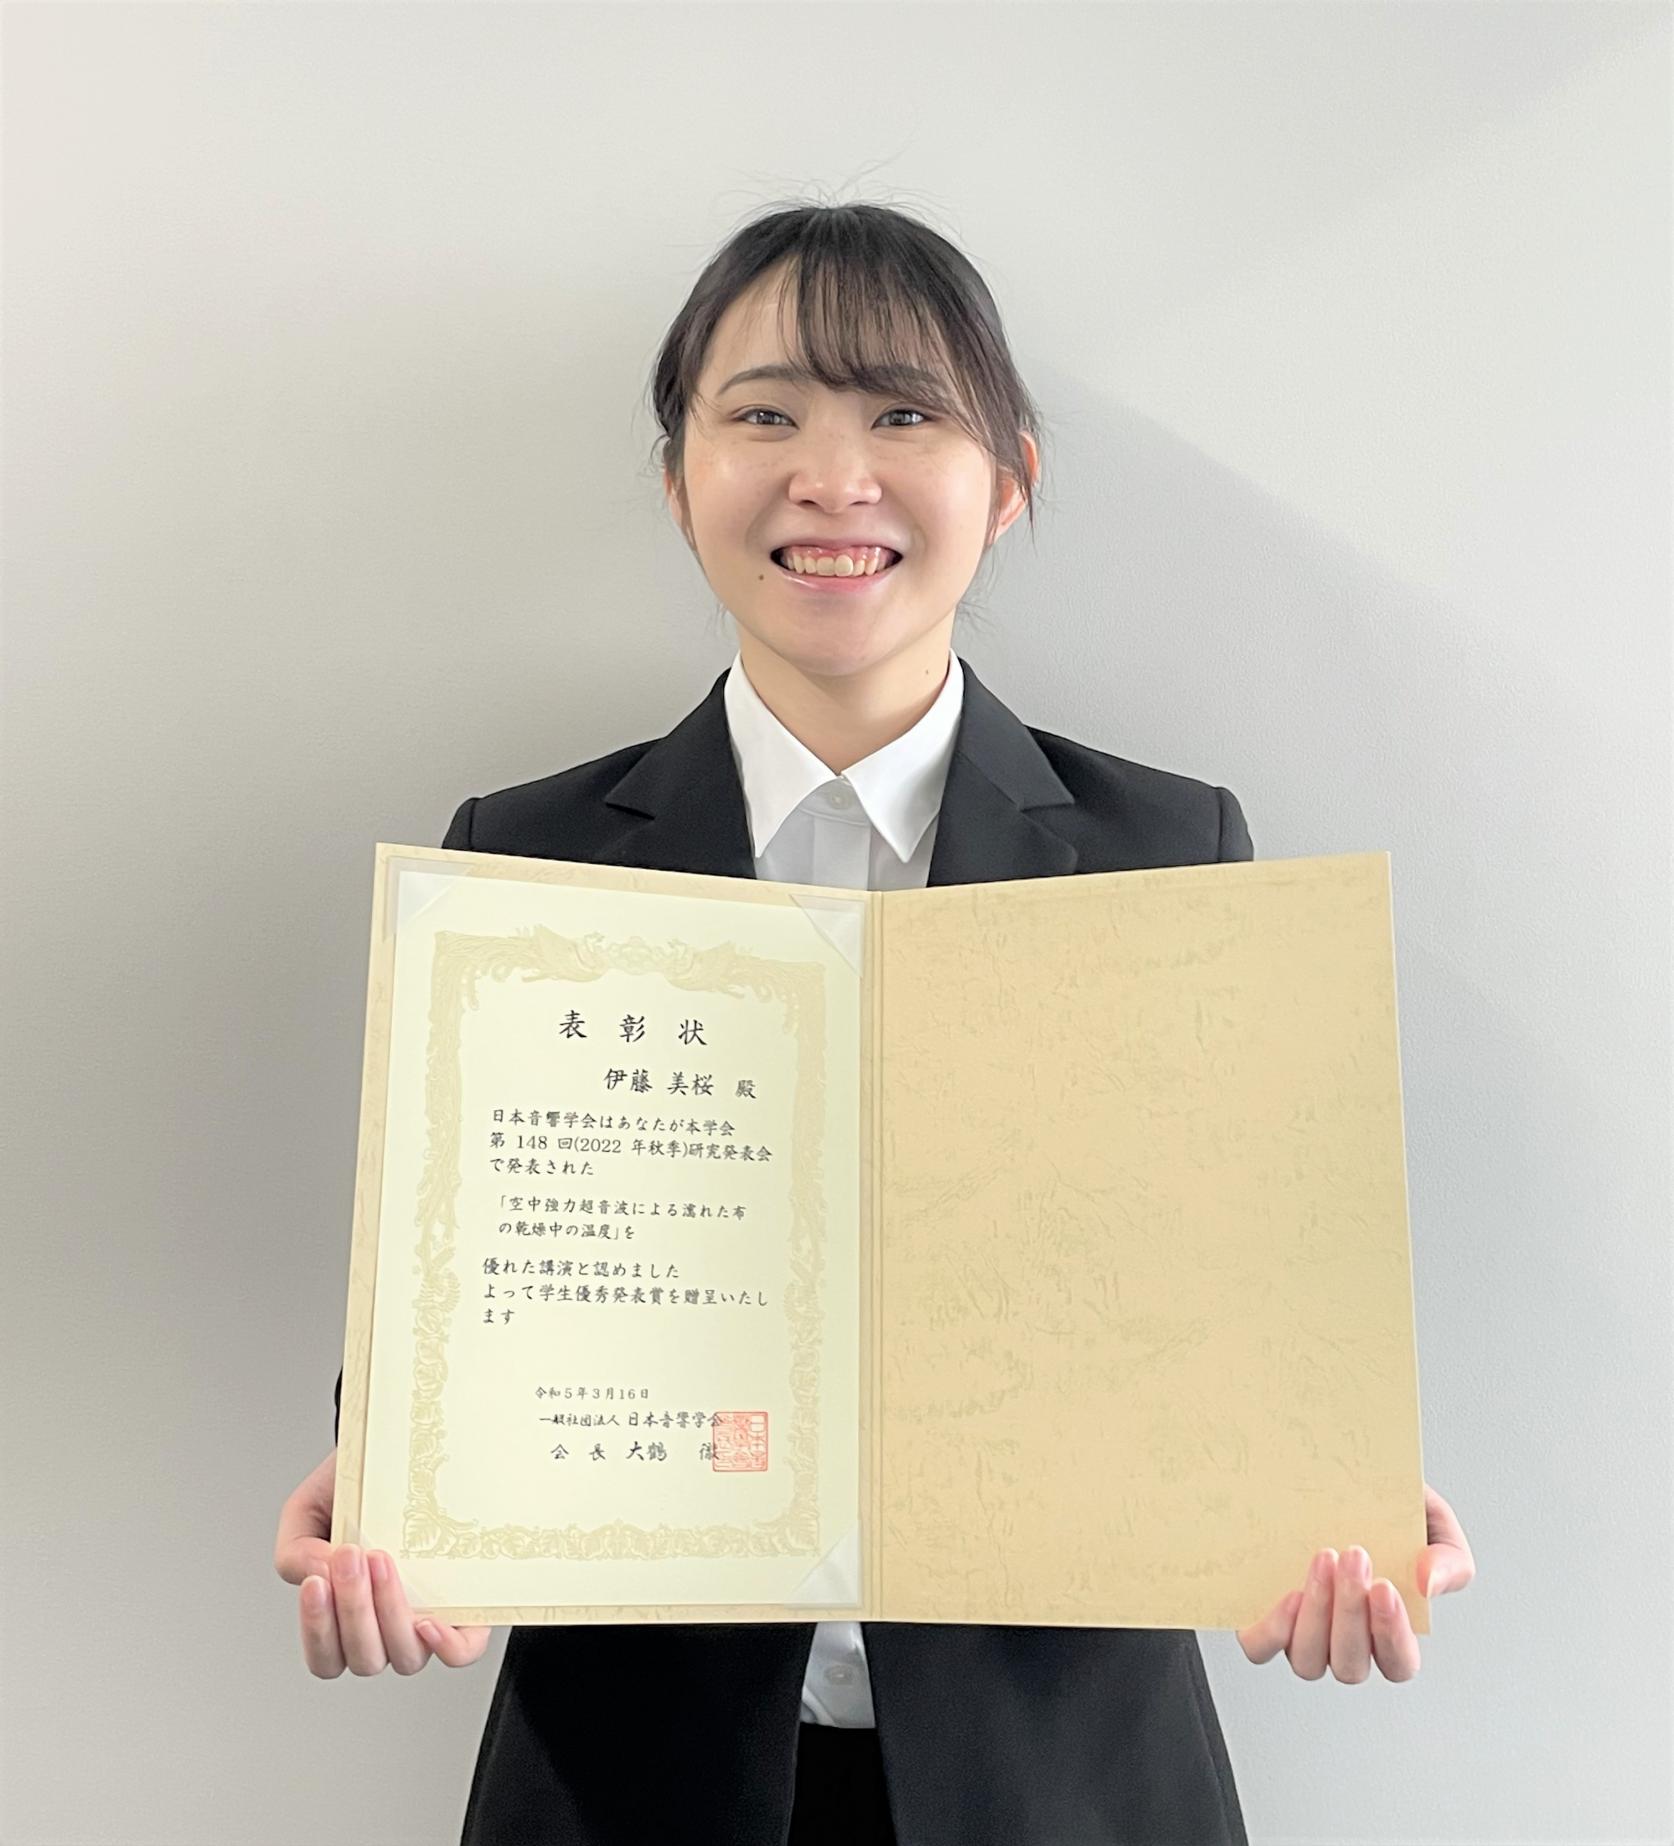 電気工学専攻2年生の伊藤美桜さんが、2022年日本音響学会秋季研究発表会において、学生優秀発表賞を受賞しました。